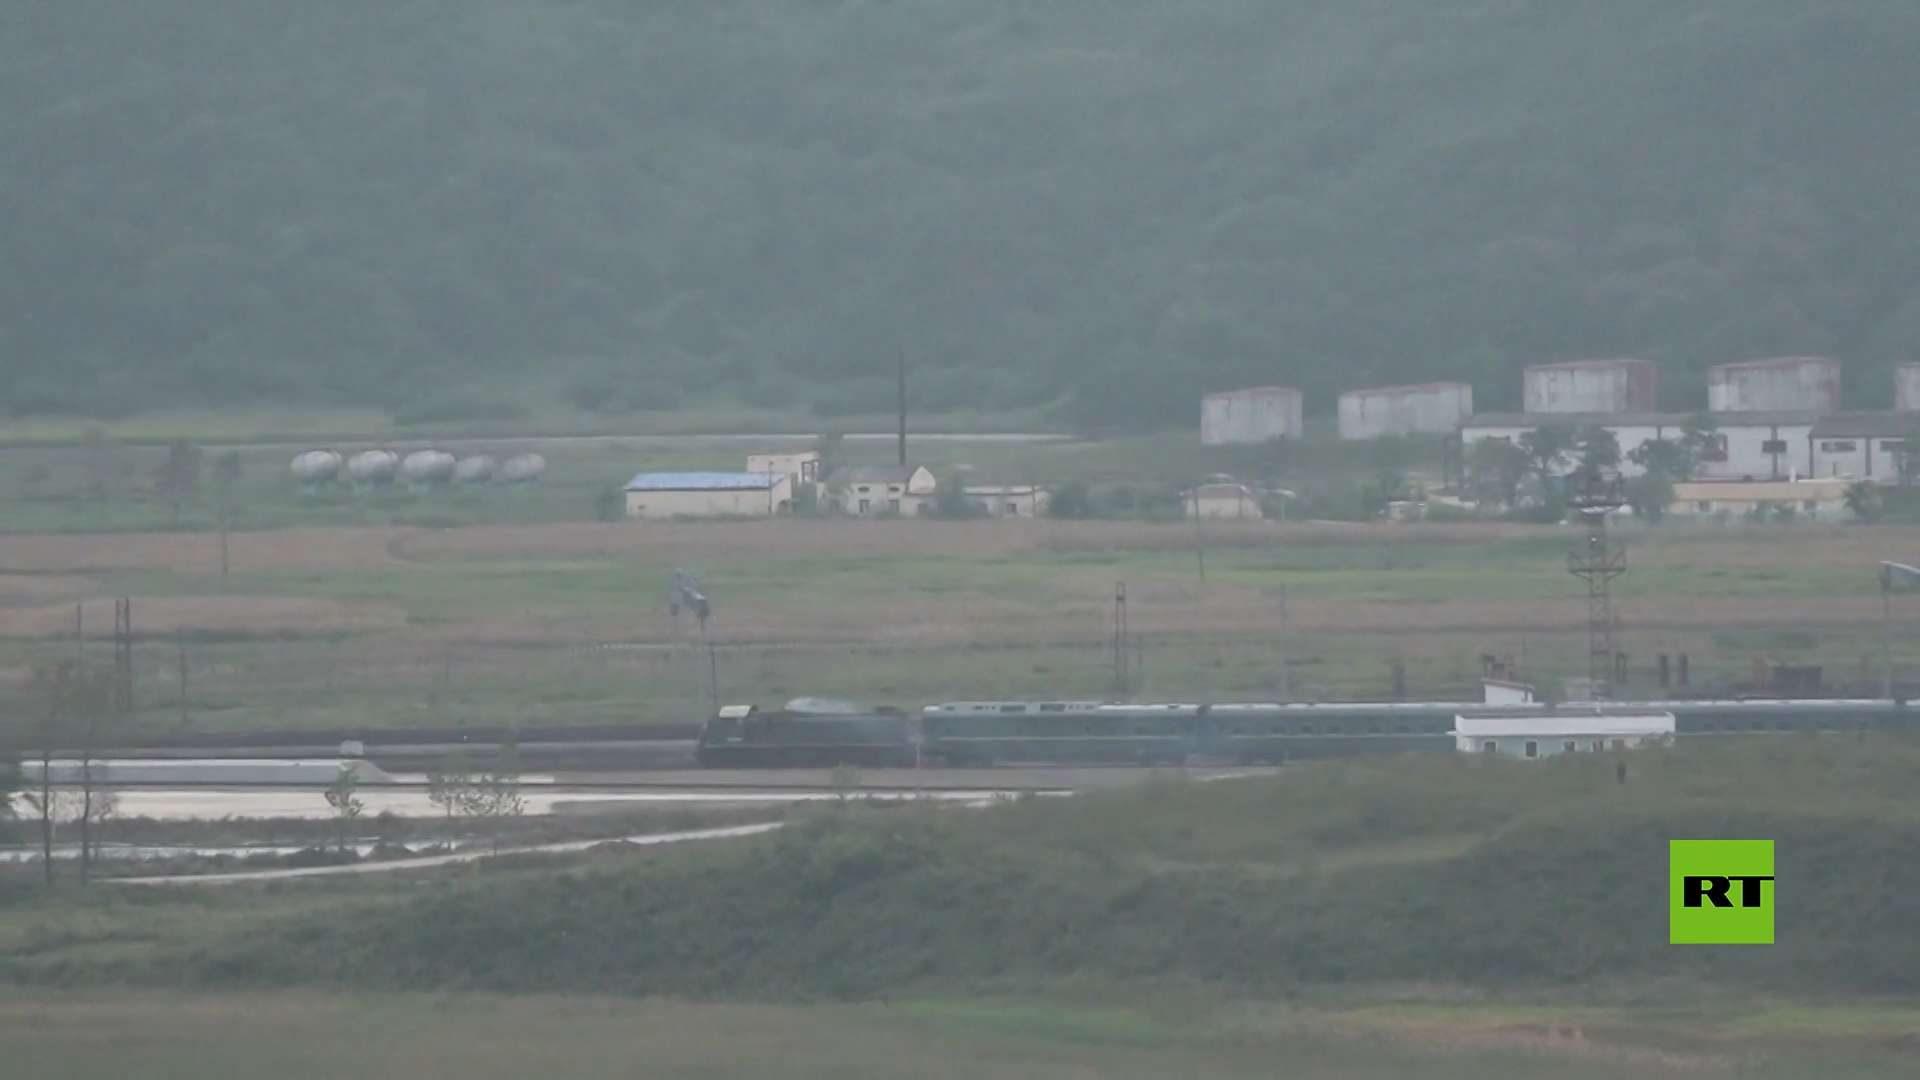 رصد قطار يزعم أنه تابع لكيم جونغ أون بالقرب من الحدود مع روسيا